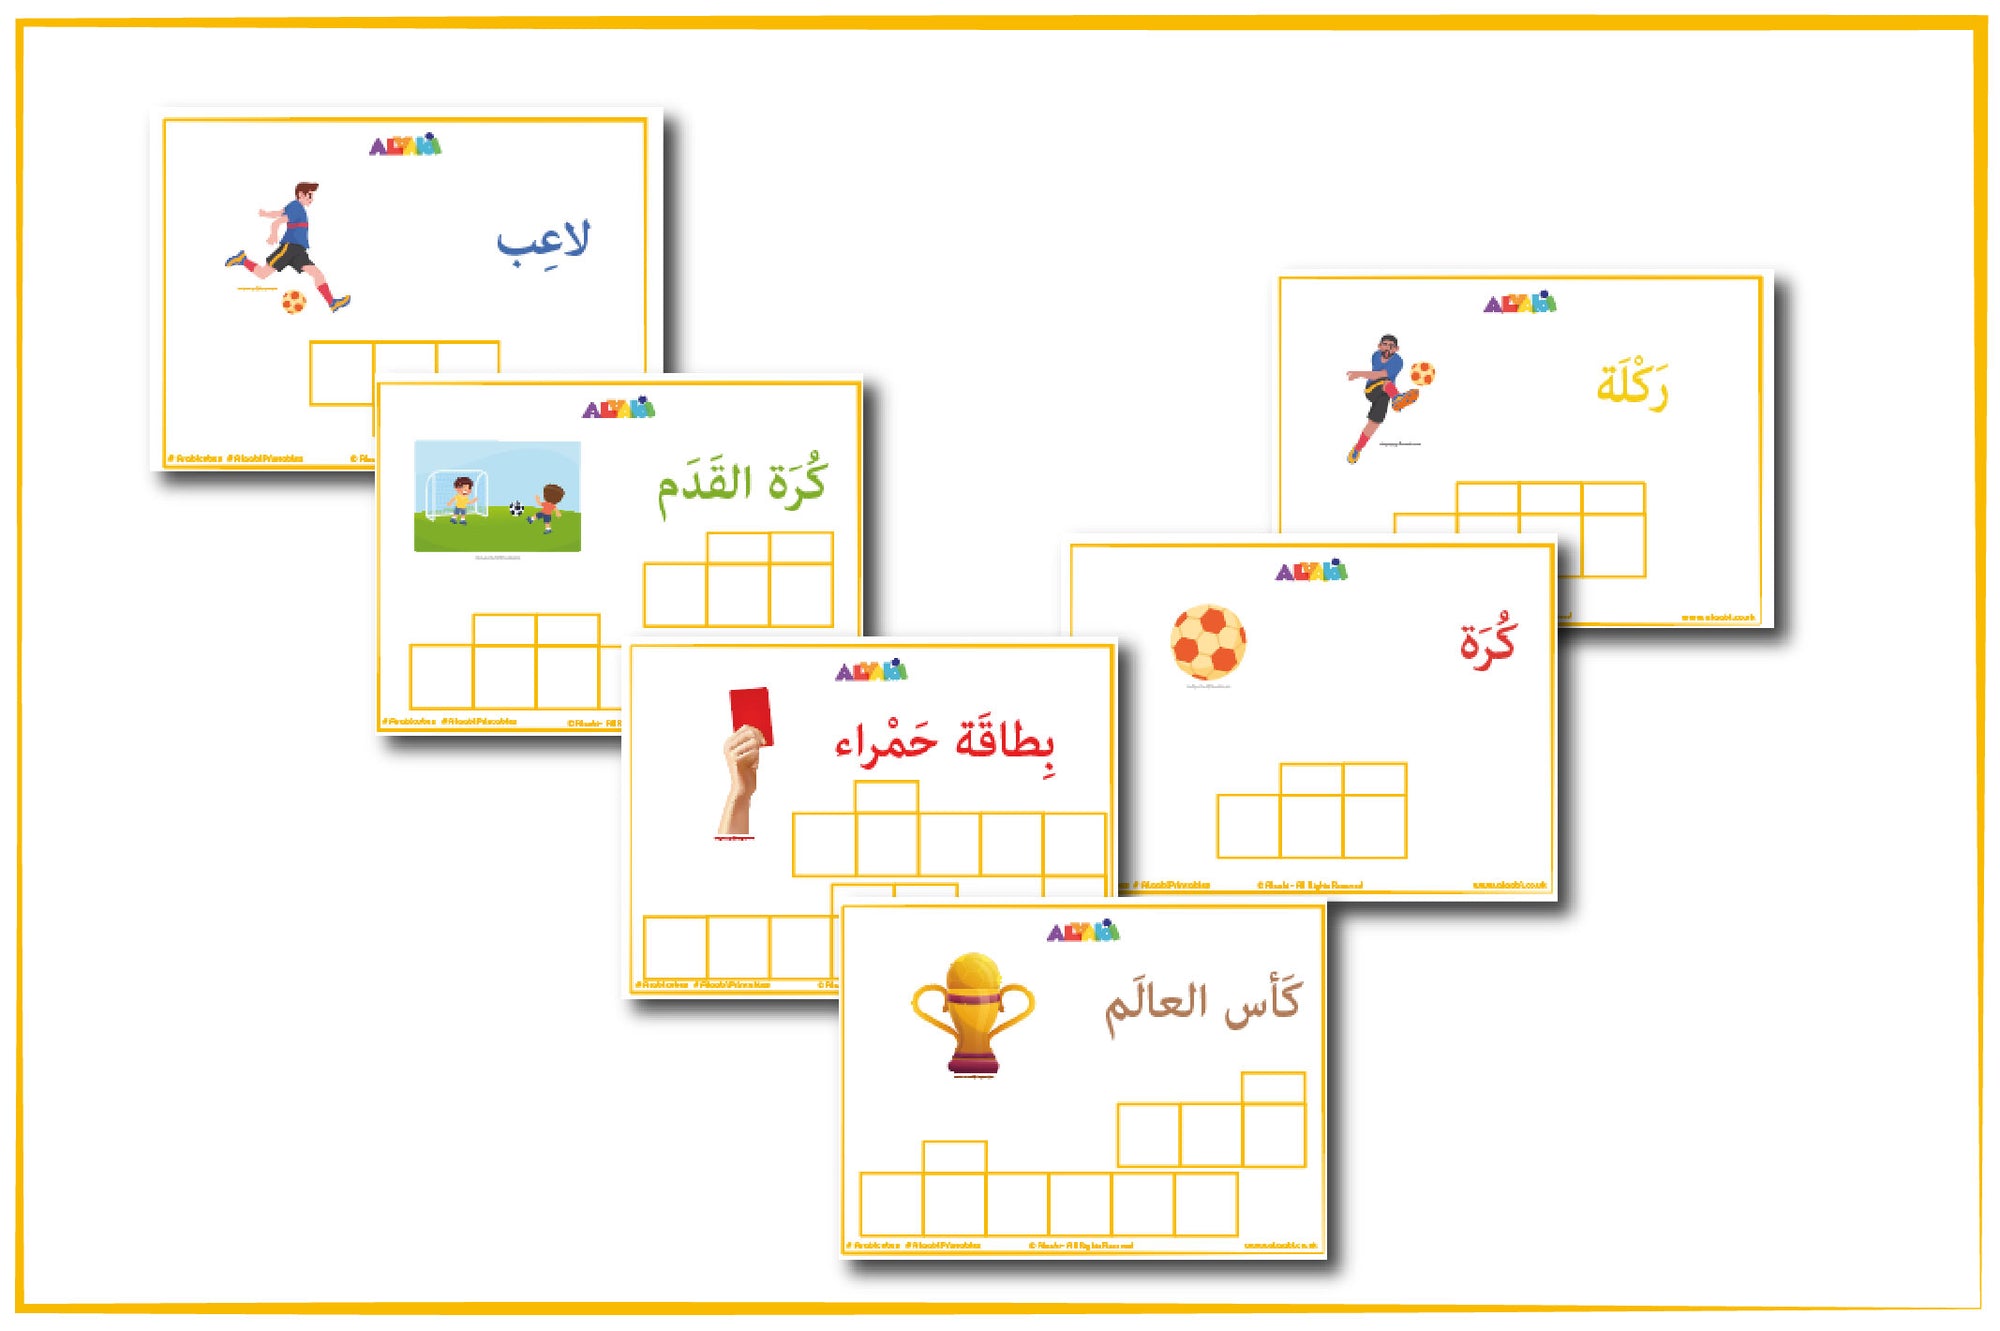 كلماتي العربية الأولى : كأس العالم